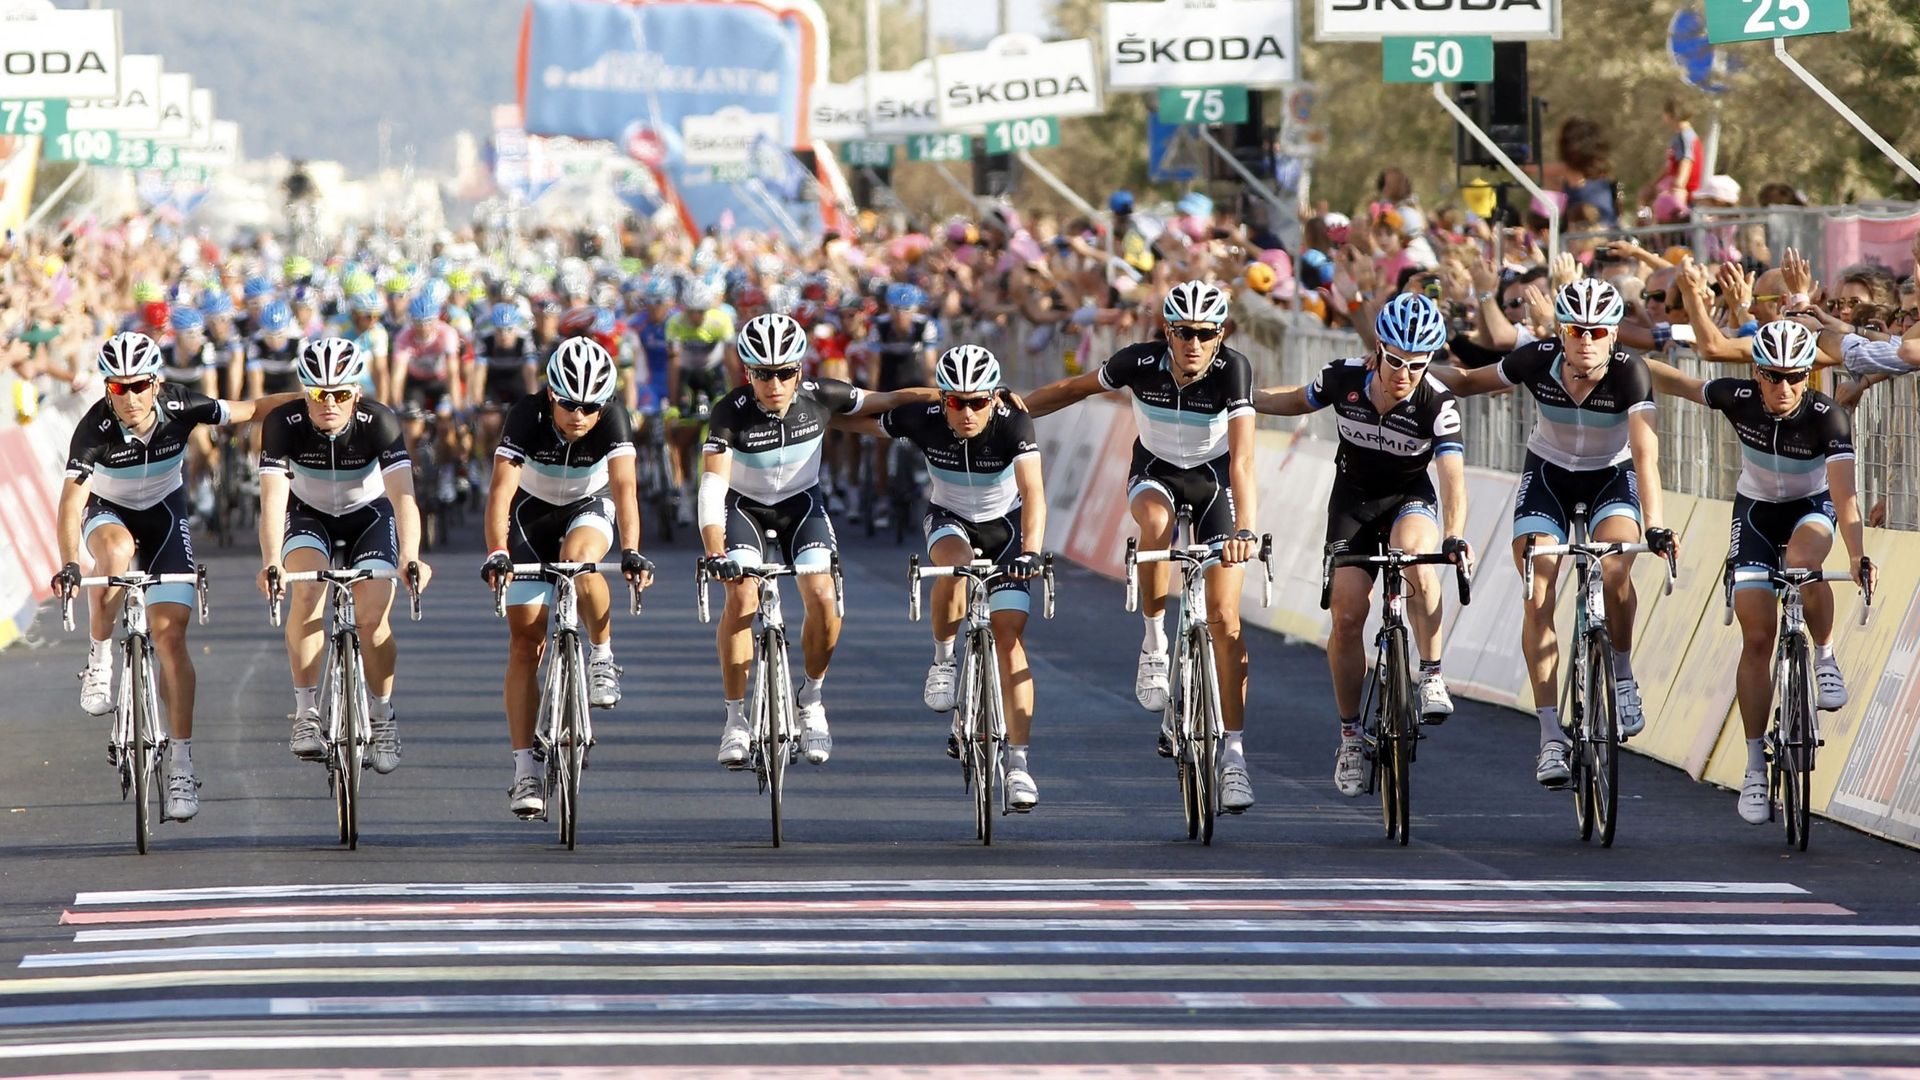 Cyclisme : Au lendemain de la mort de Wouter Weylandt sur les routes du Giro, l’équipe Leopard Trek ainsi que l’Américain Tyler Farrar (ami intime de Weylandt) se positionnent à l’avant et franchissent la ligne en se tenant par l’épaule, la plupart en ple